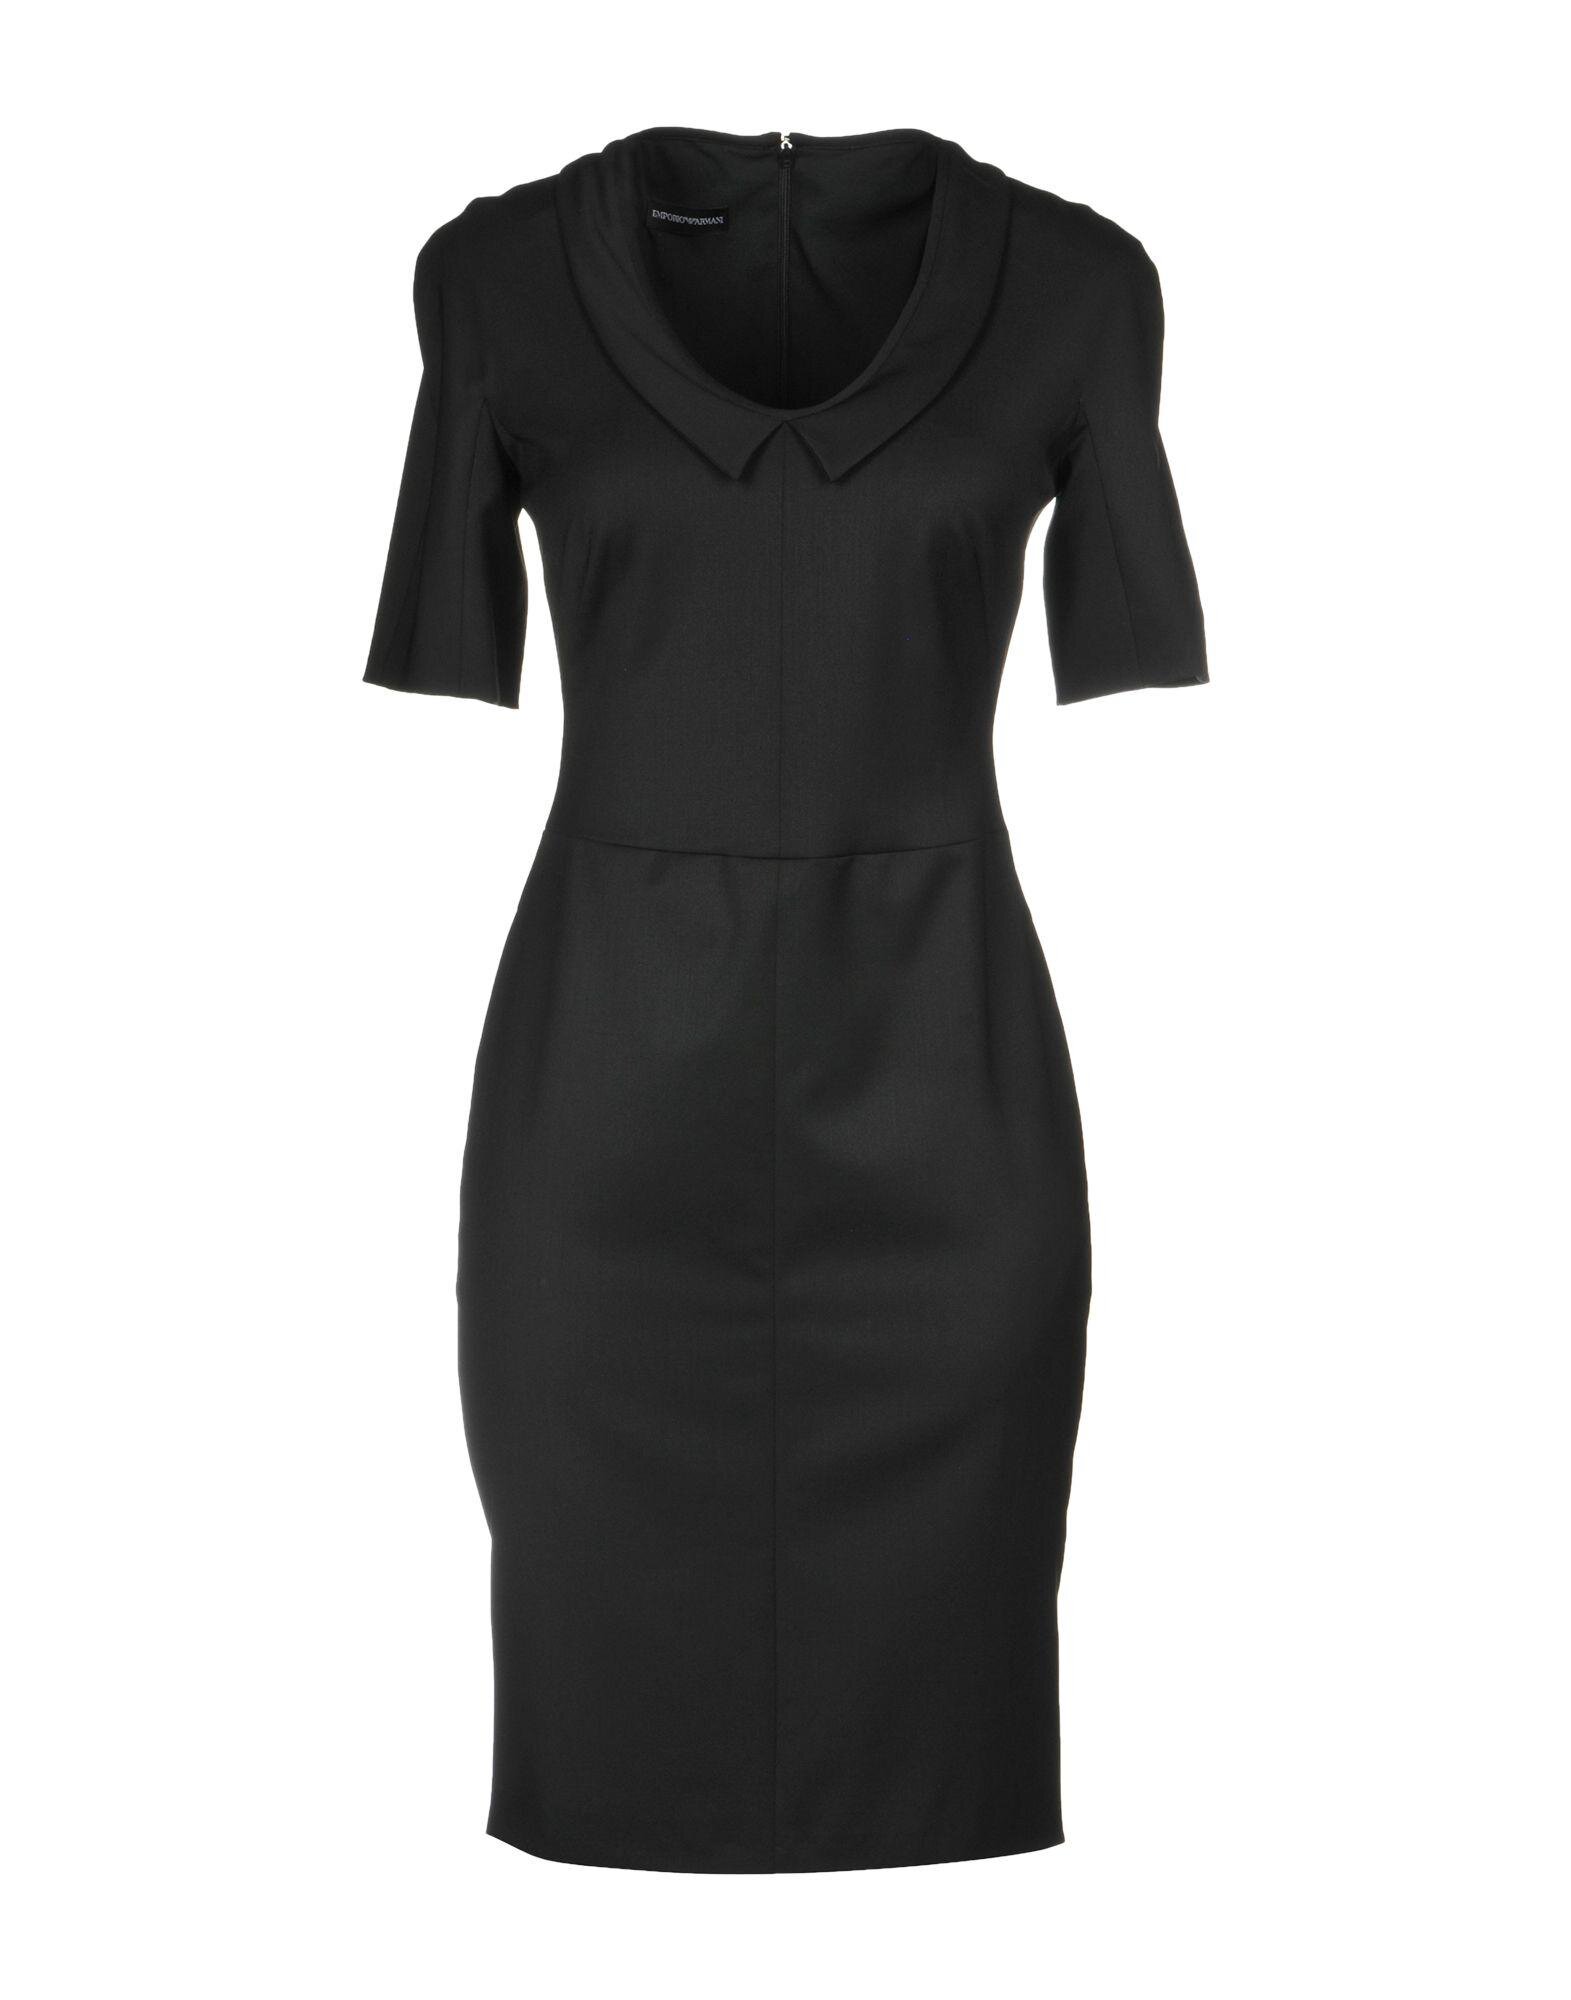 Emporio Armani Pencil Dress with Flat Collar in Black — UFO No More